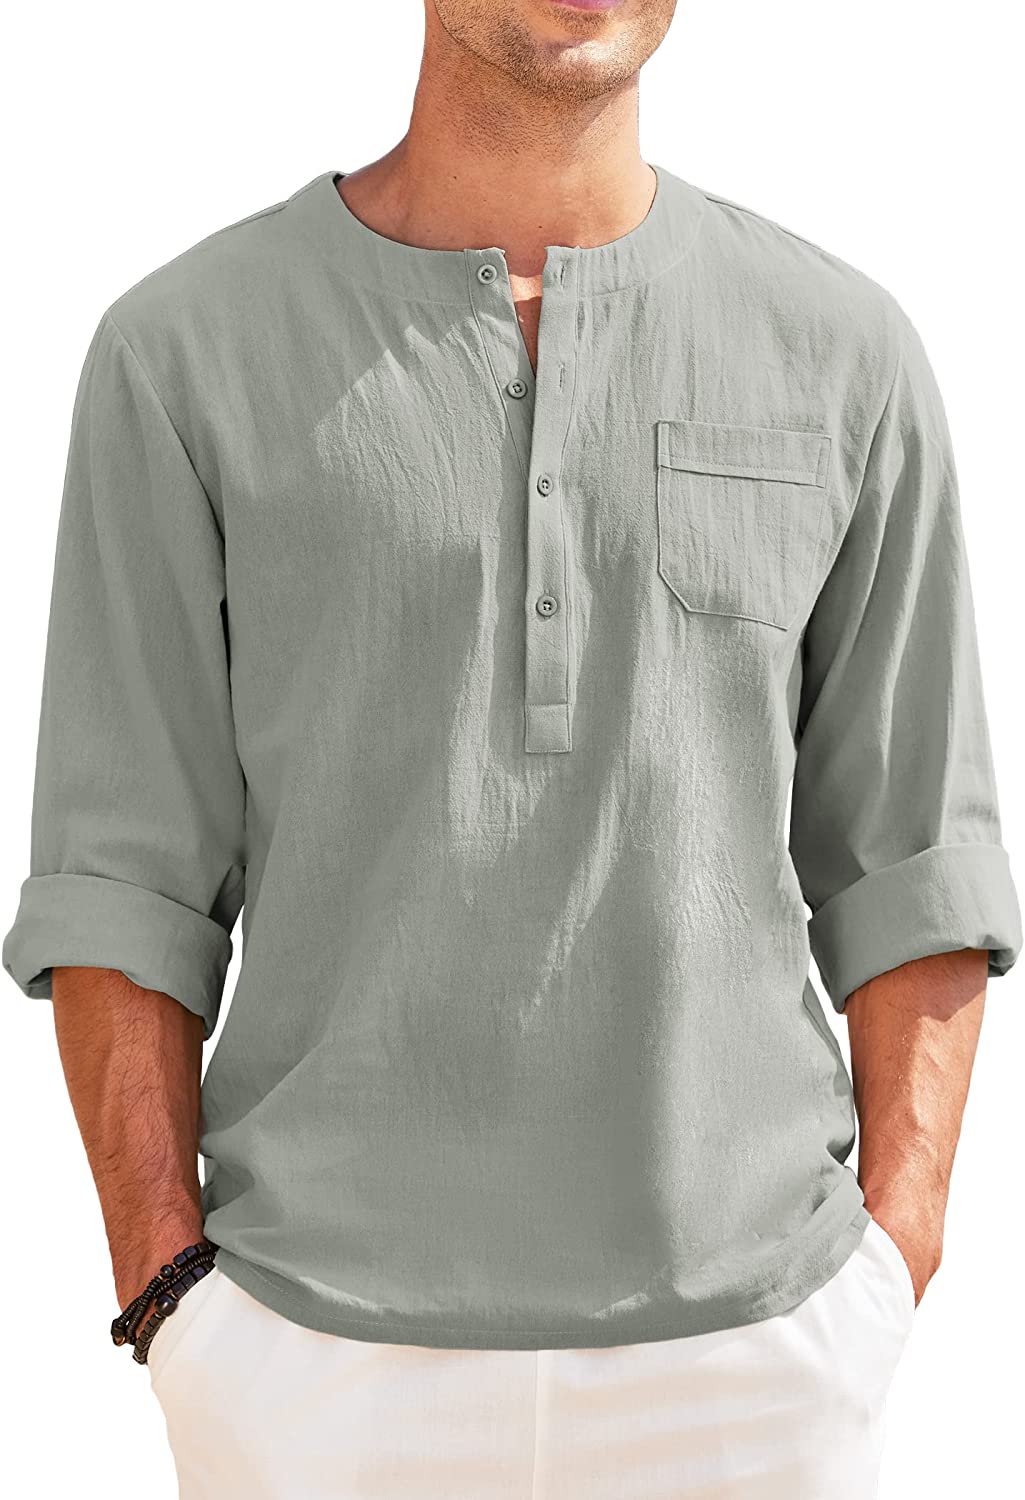 JINIDU Men's Cotton Linen Henley Shirts Long Sleeve Casual Beach Hippie T  Shirt